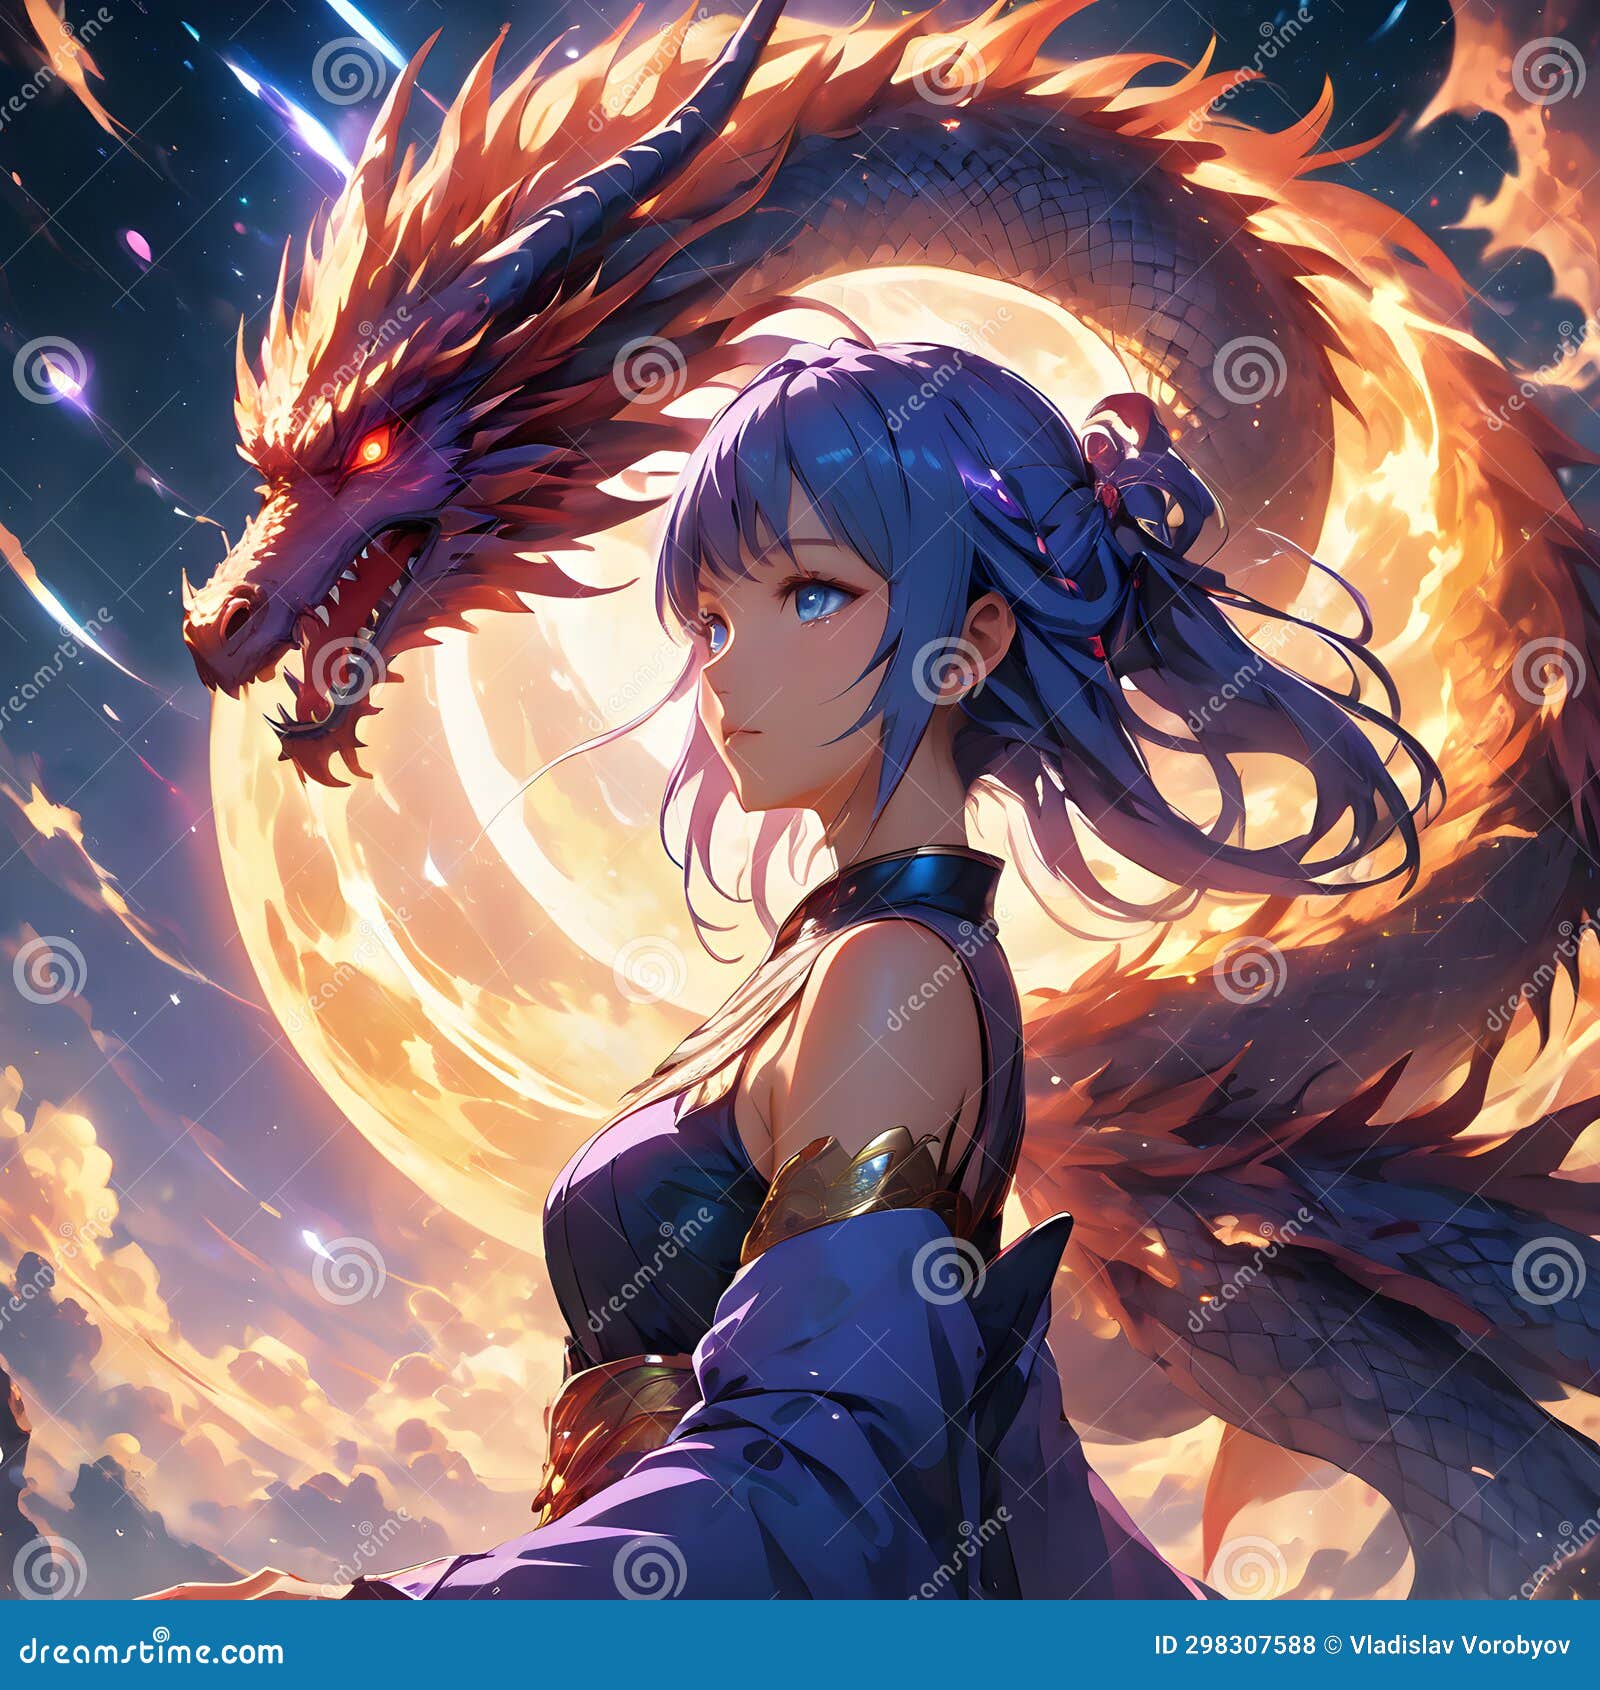 Anime Queen, queen anime HD phone wallpaper | Pxfuel